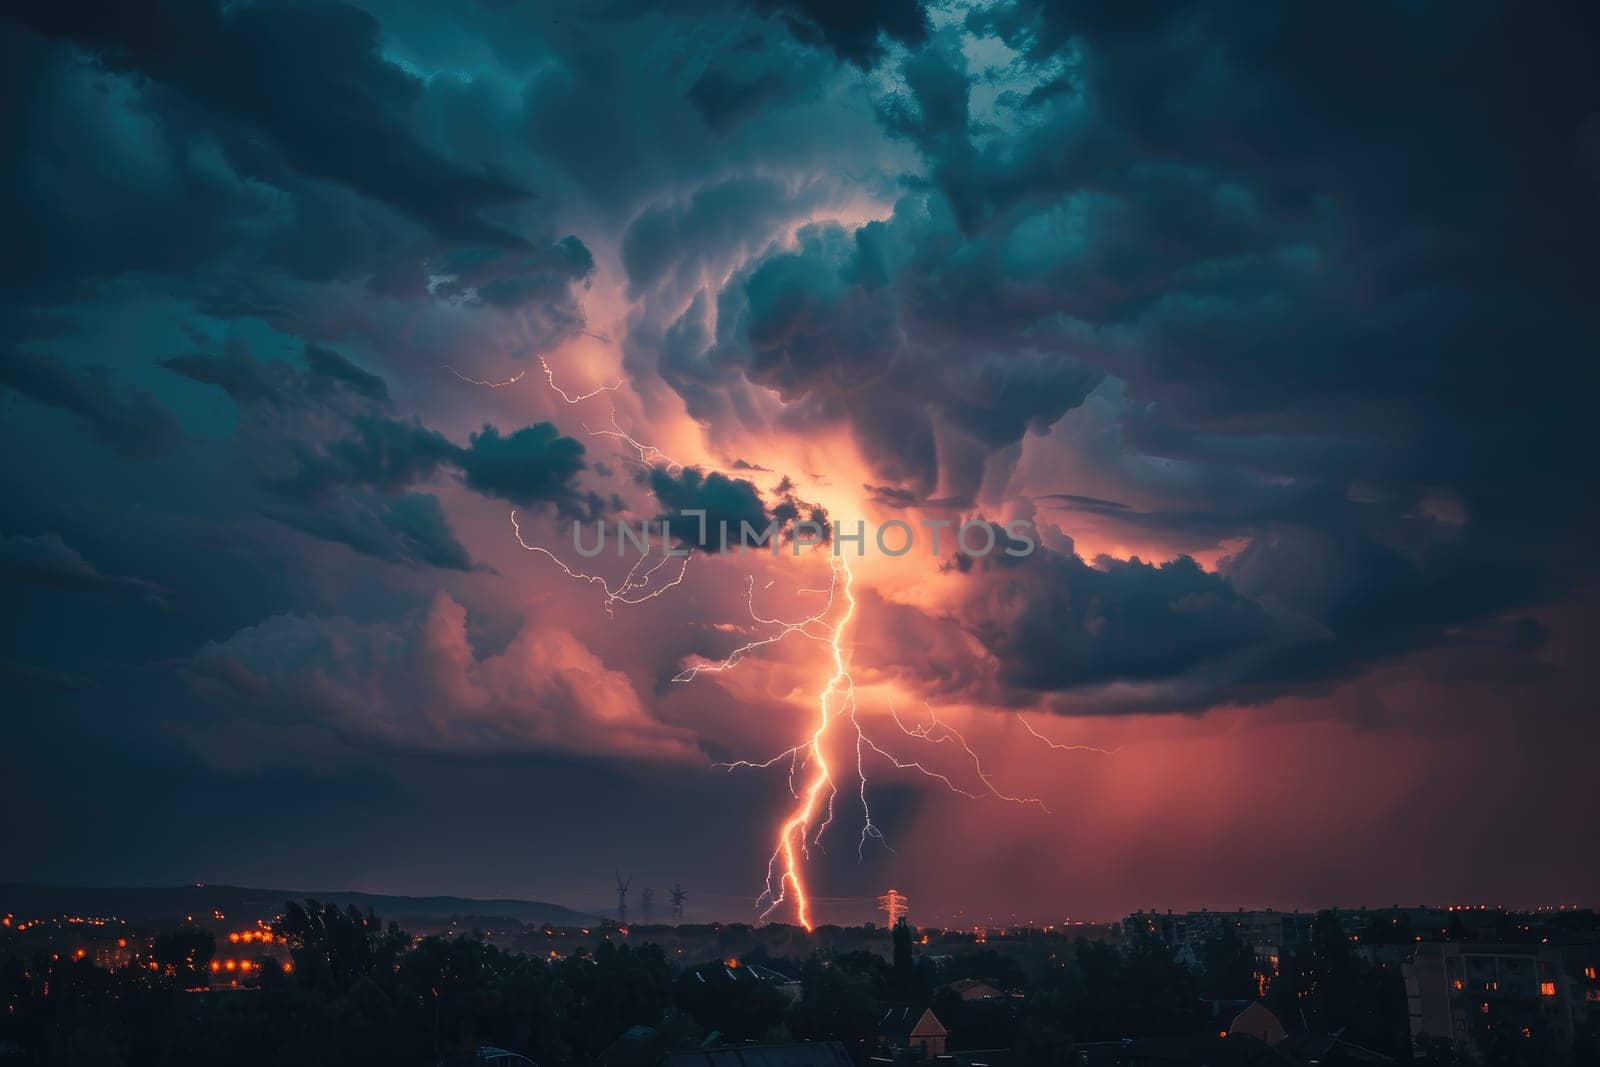 A lightning bolt illuminating a darkened sky during a thunderstorm